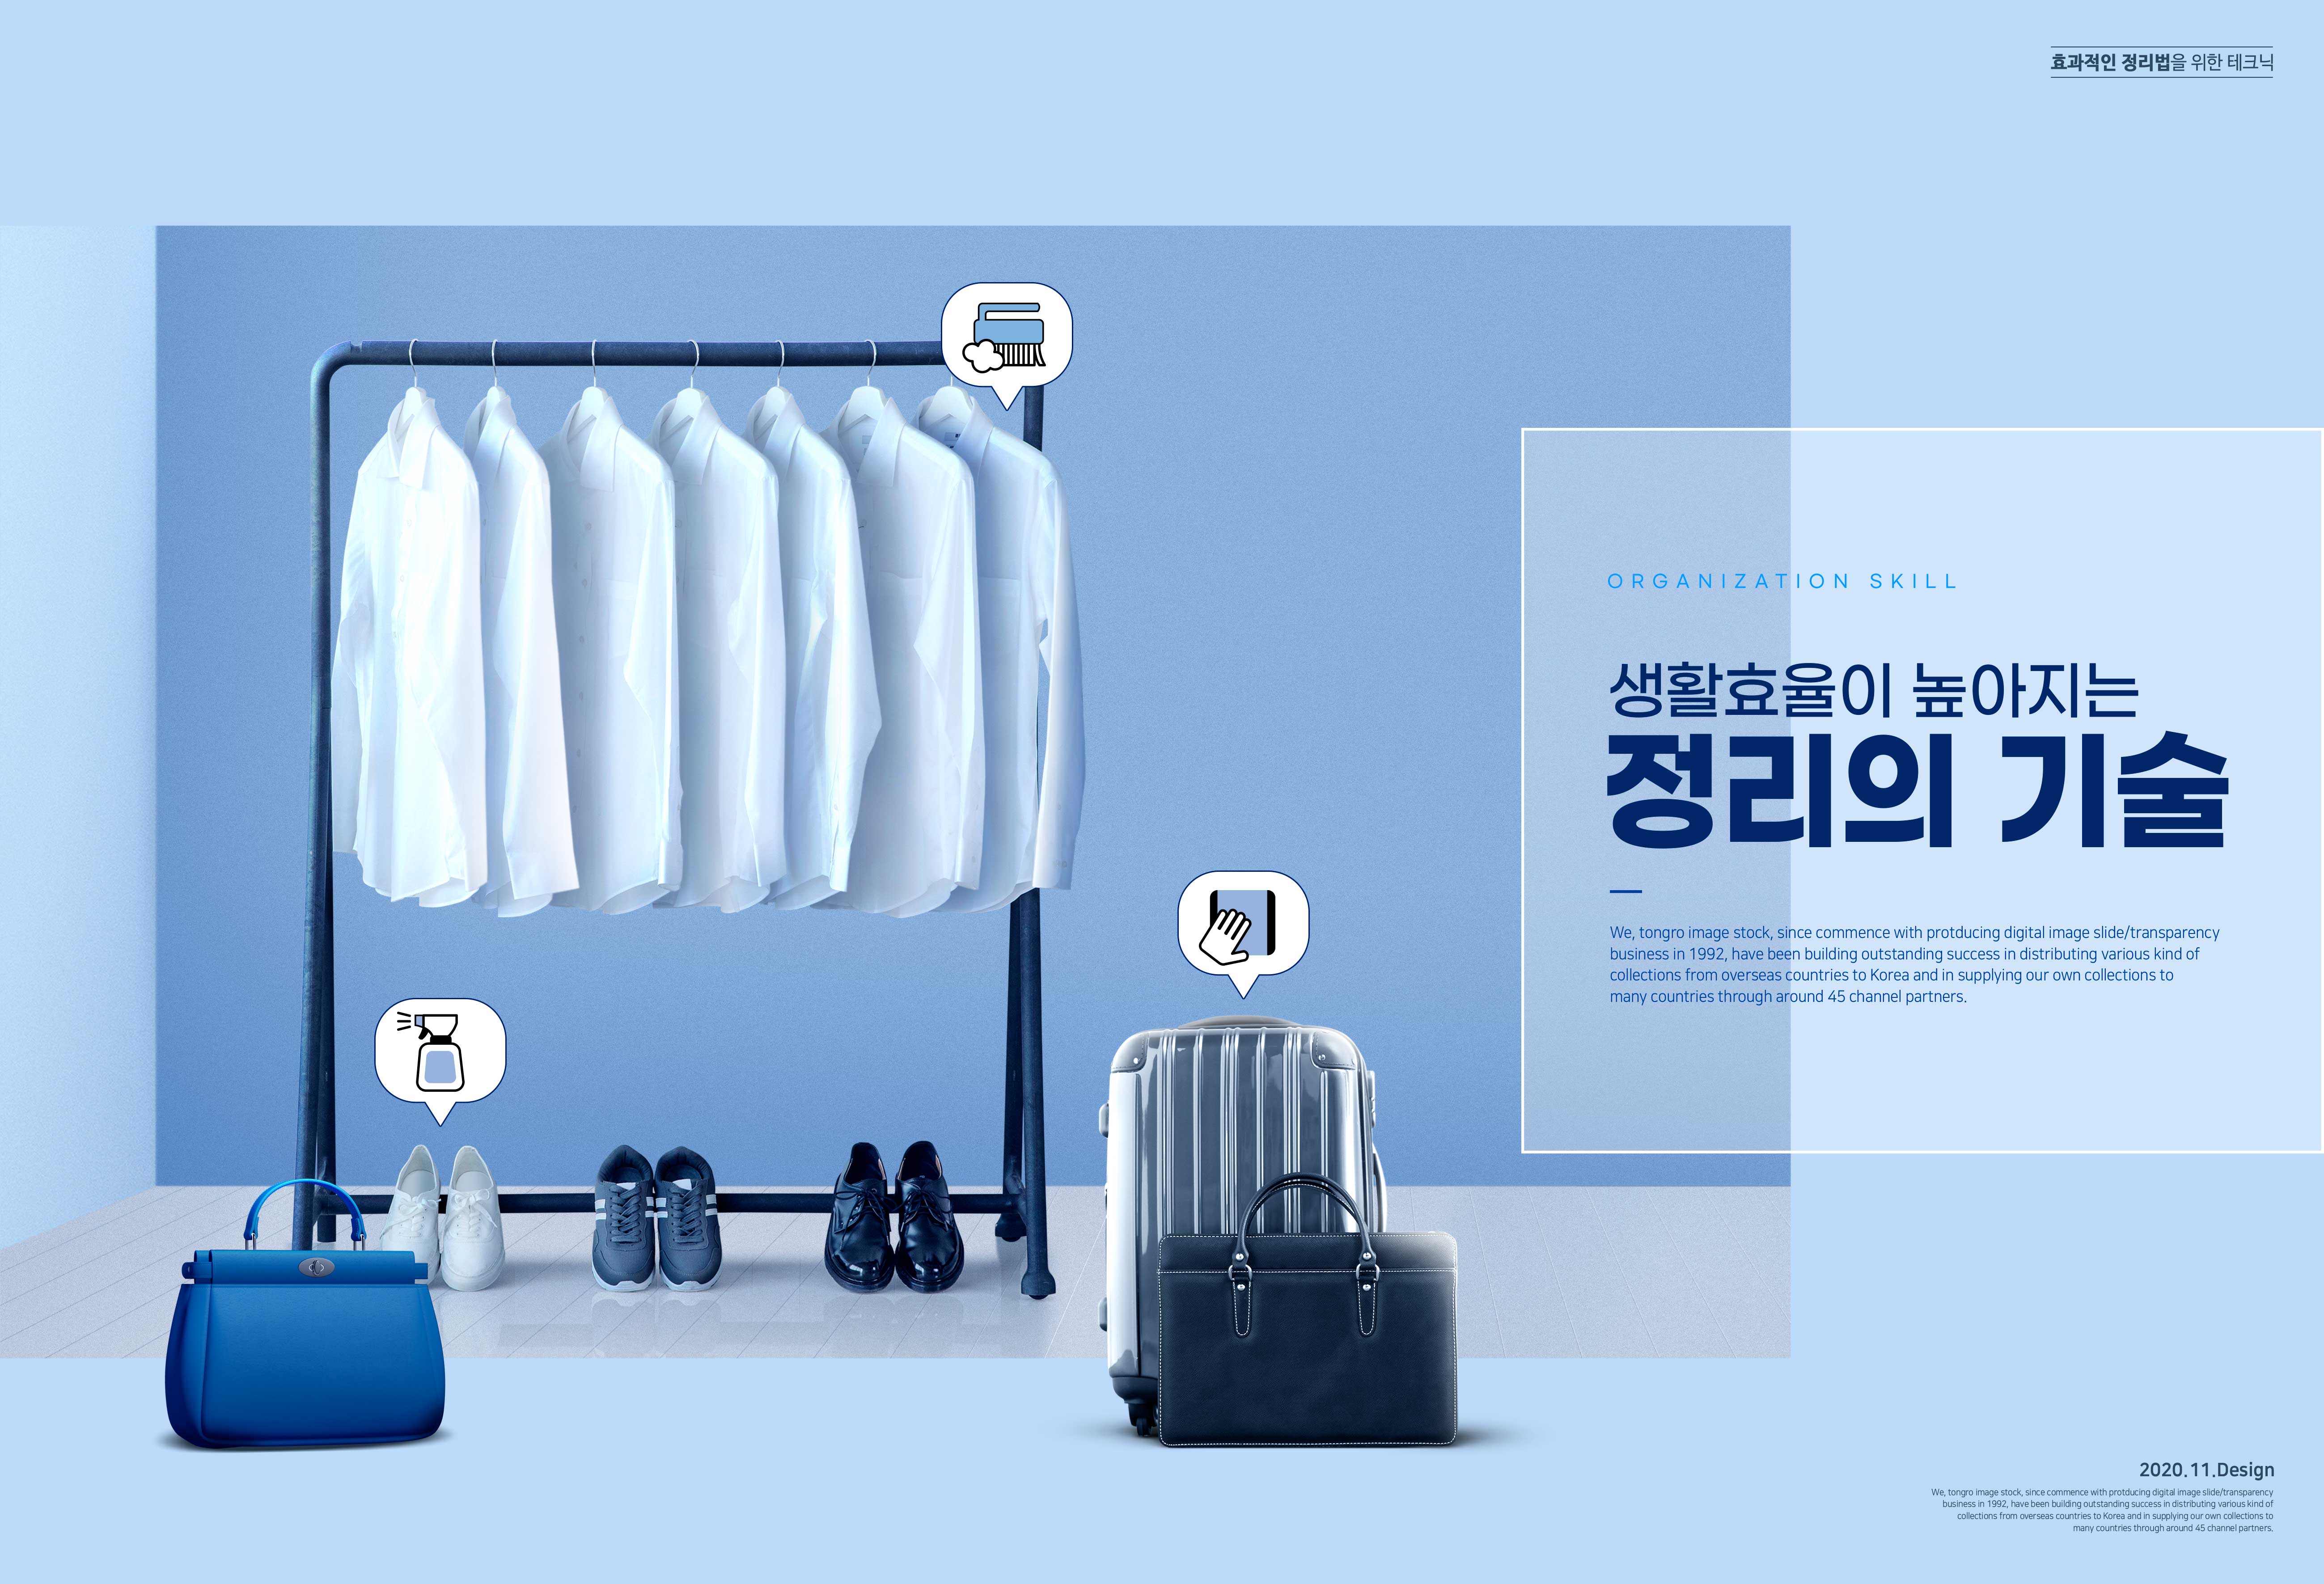 衣物整理主题高效生活海报设计韩国素材设计素材模板